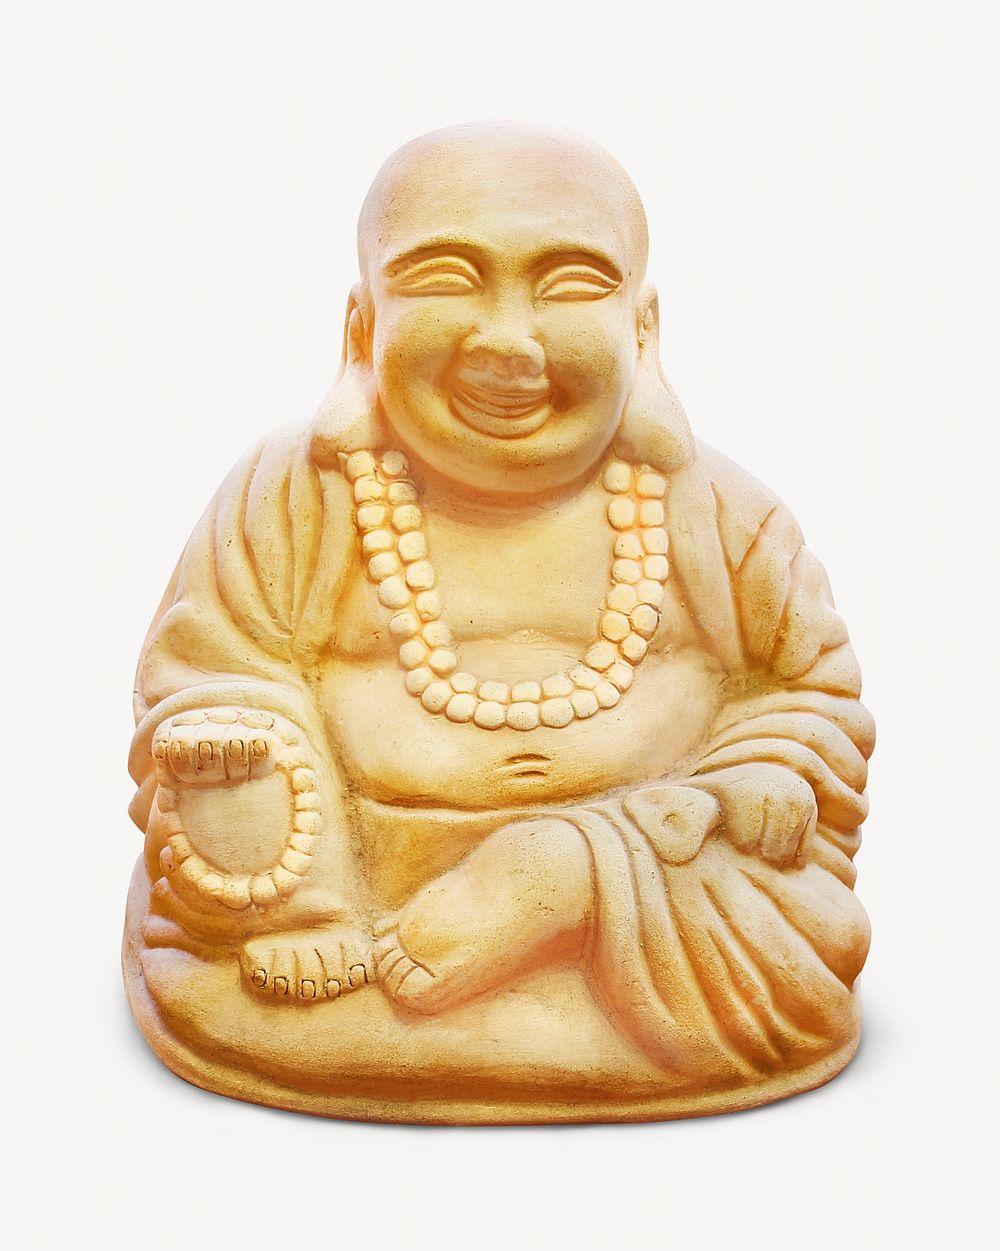 Buddhism religion statue isolated image